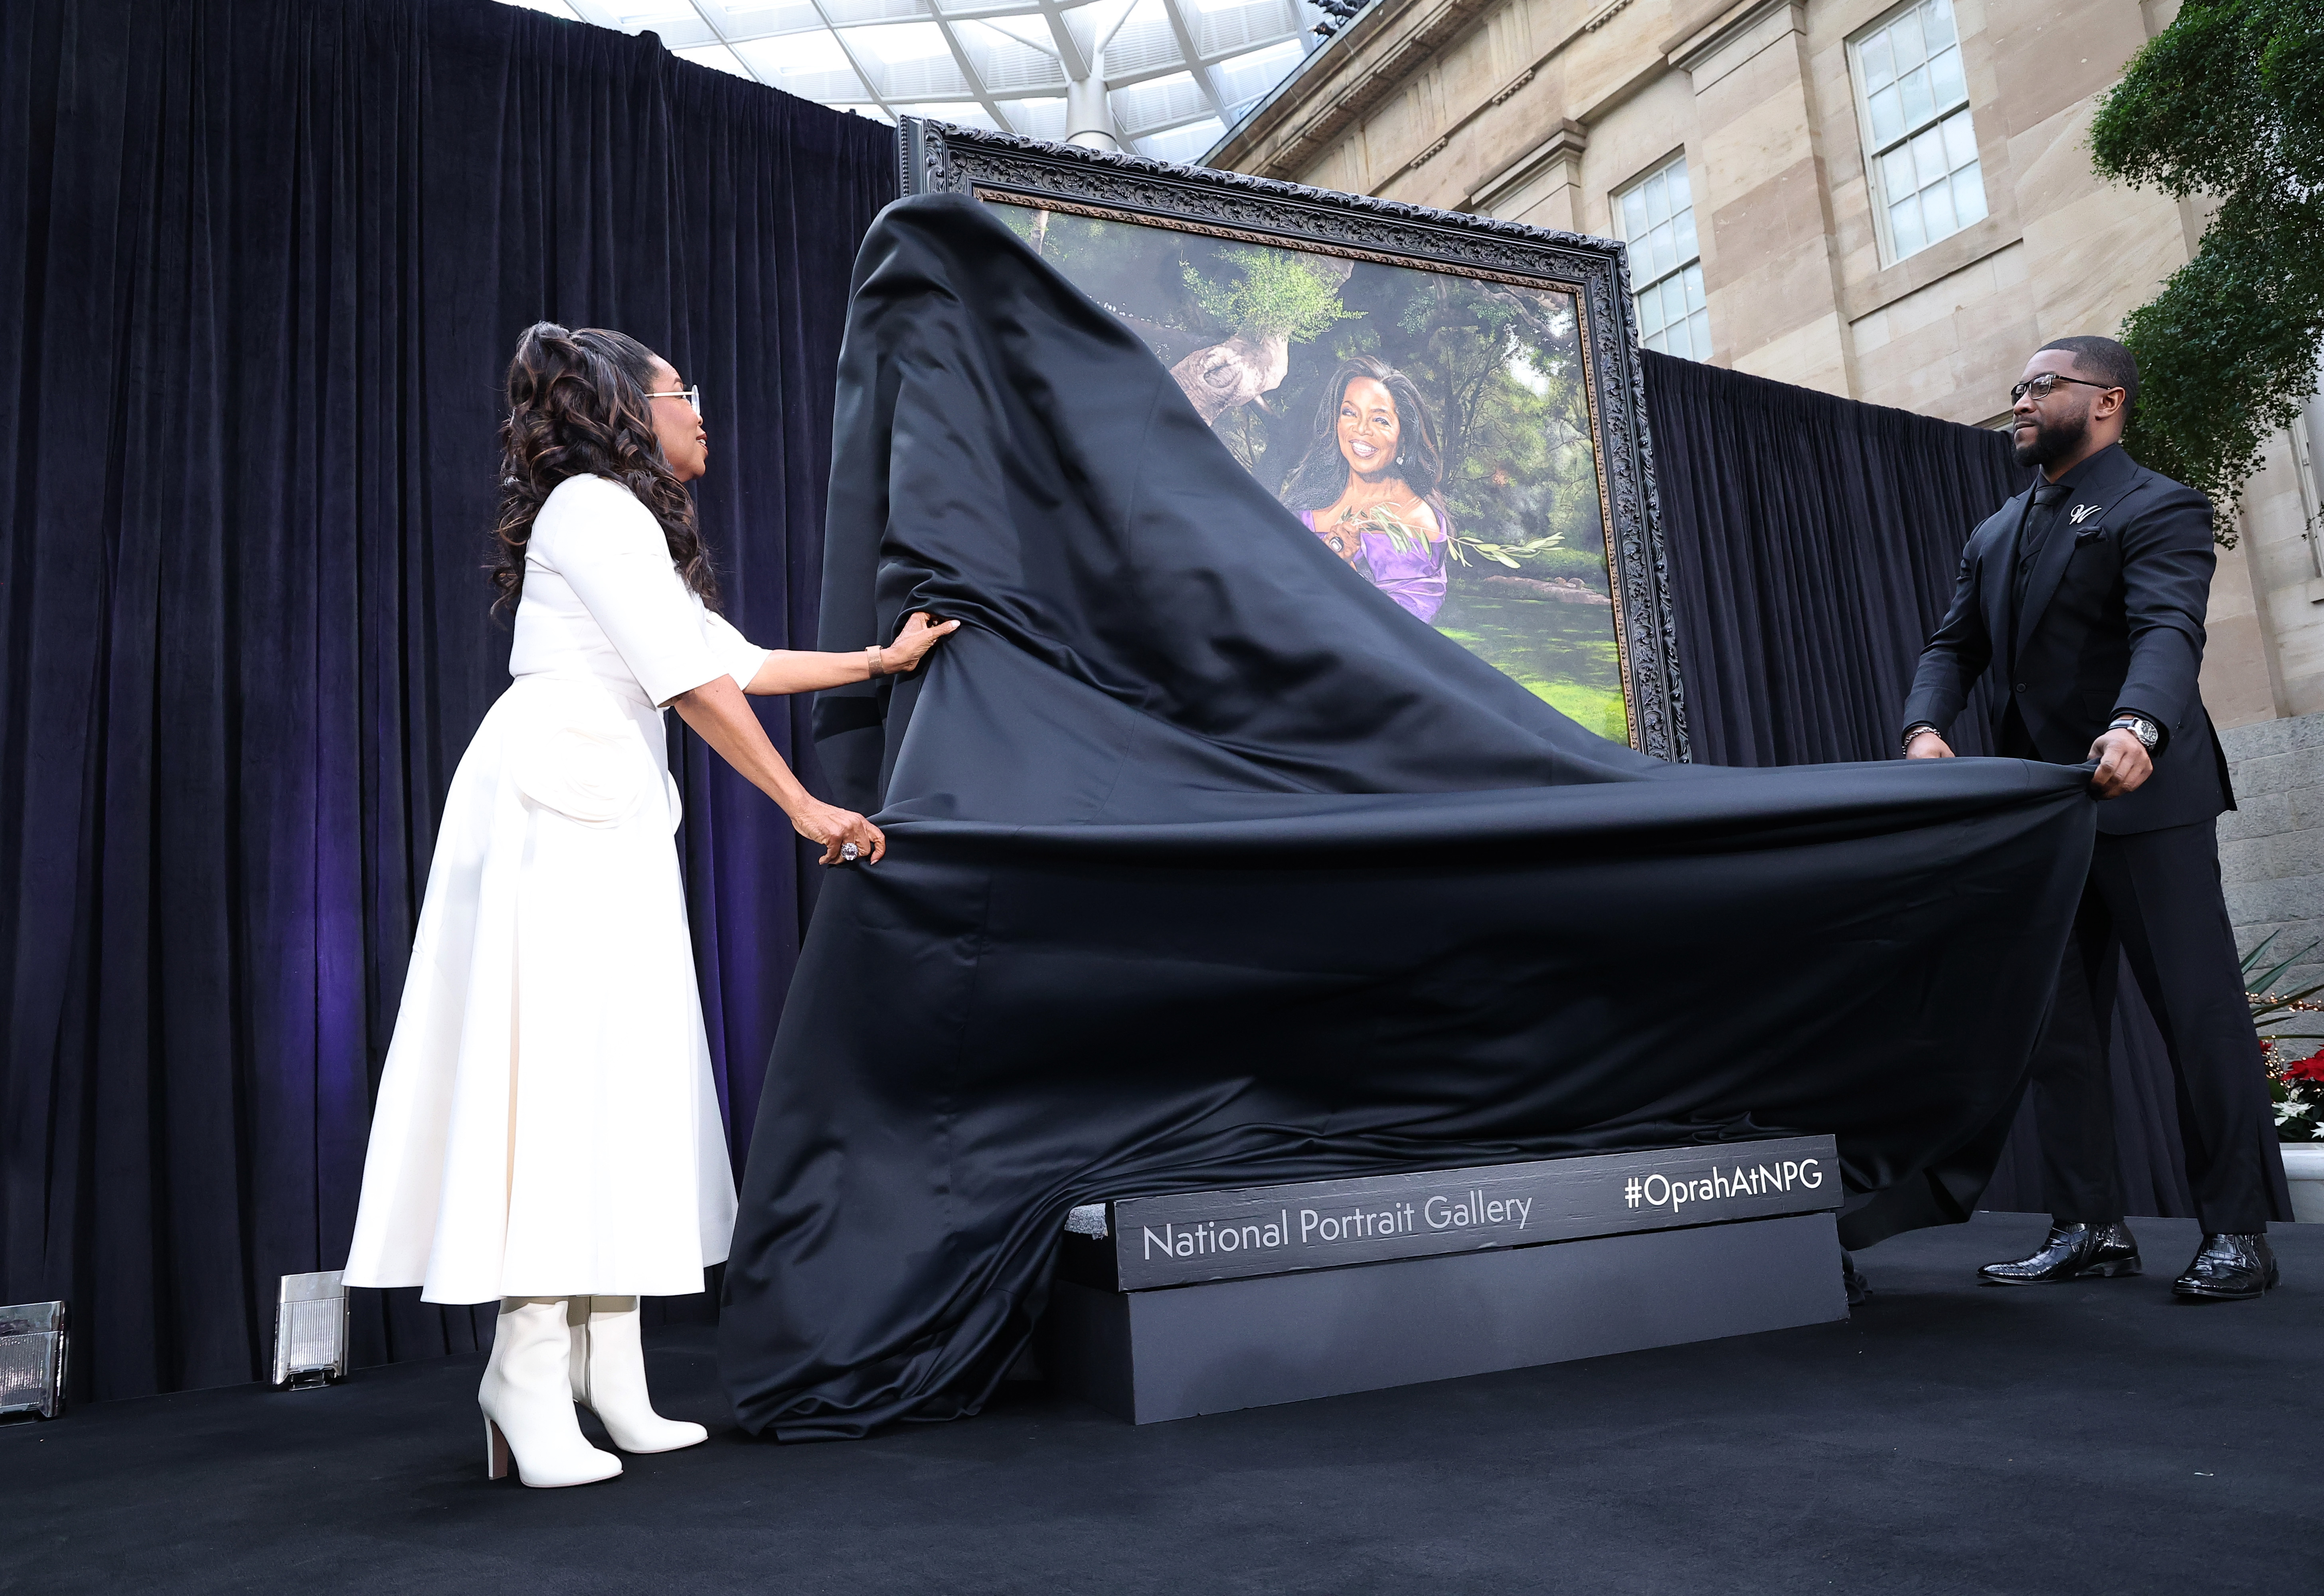 Oprah's career was honored last week